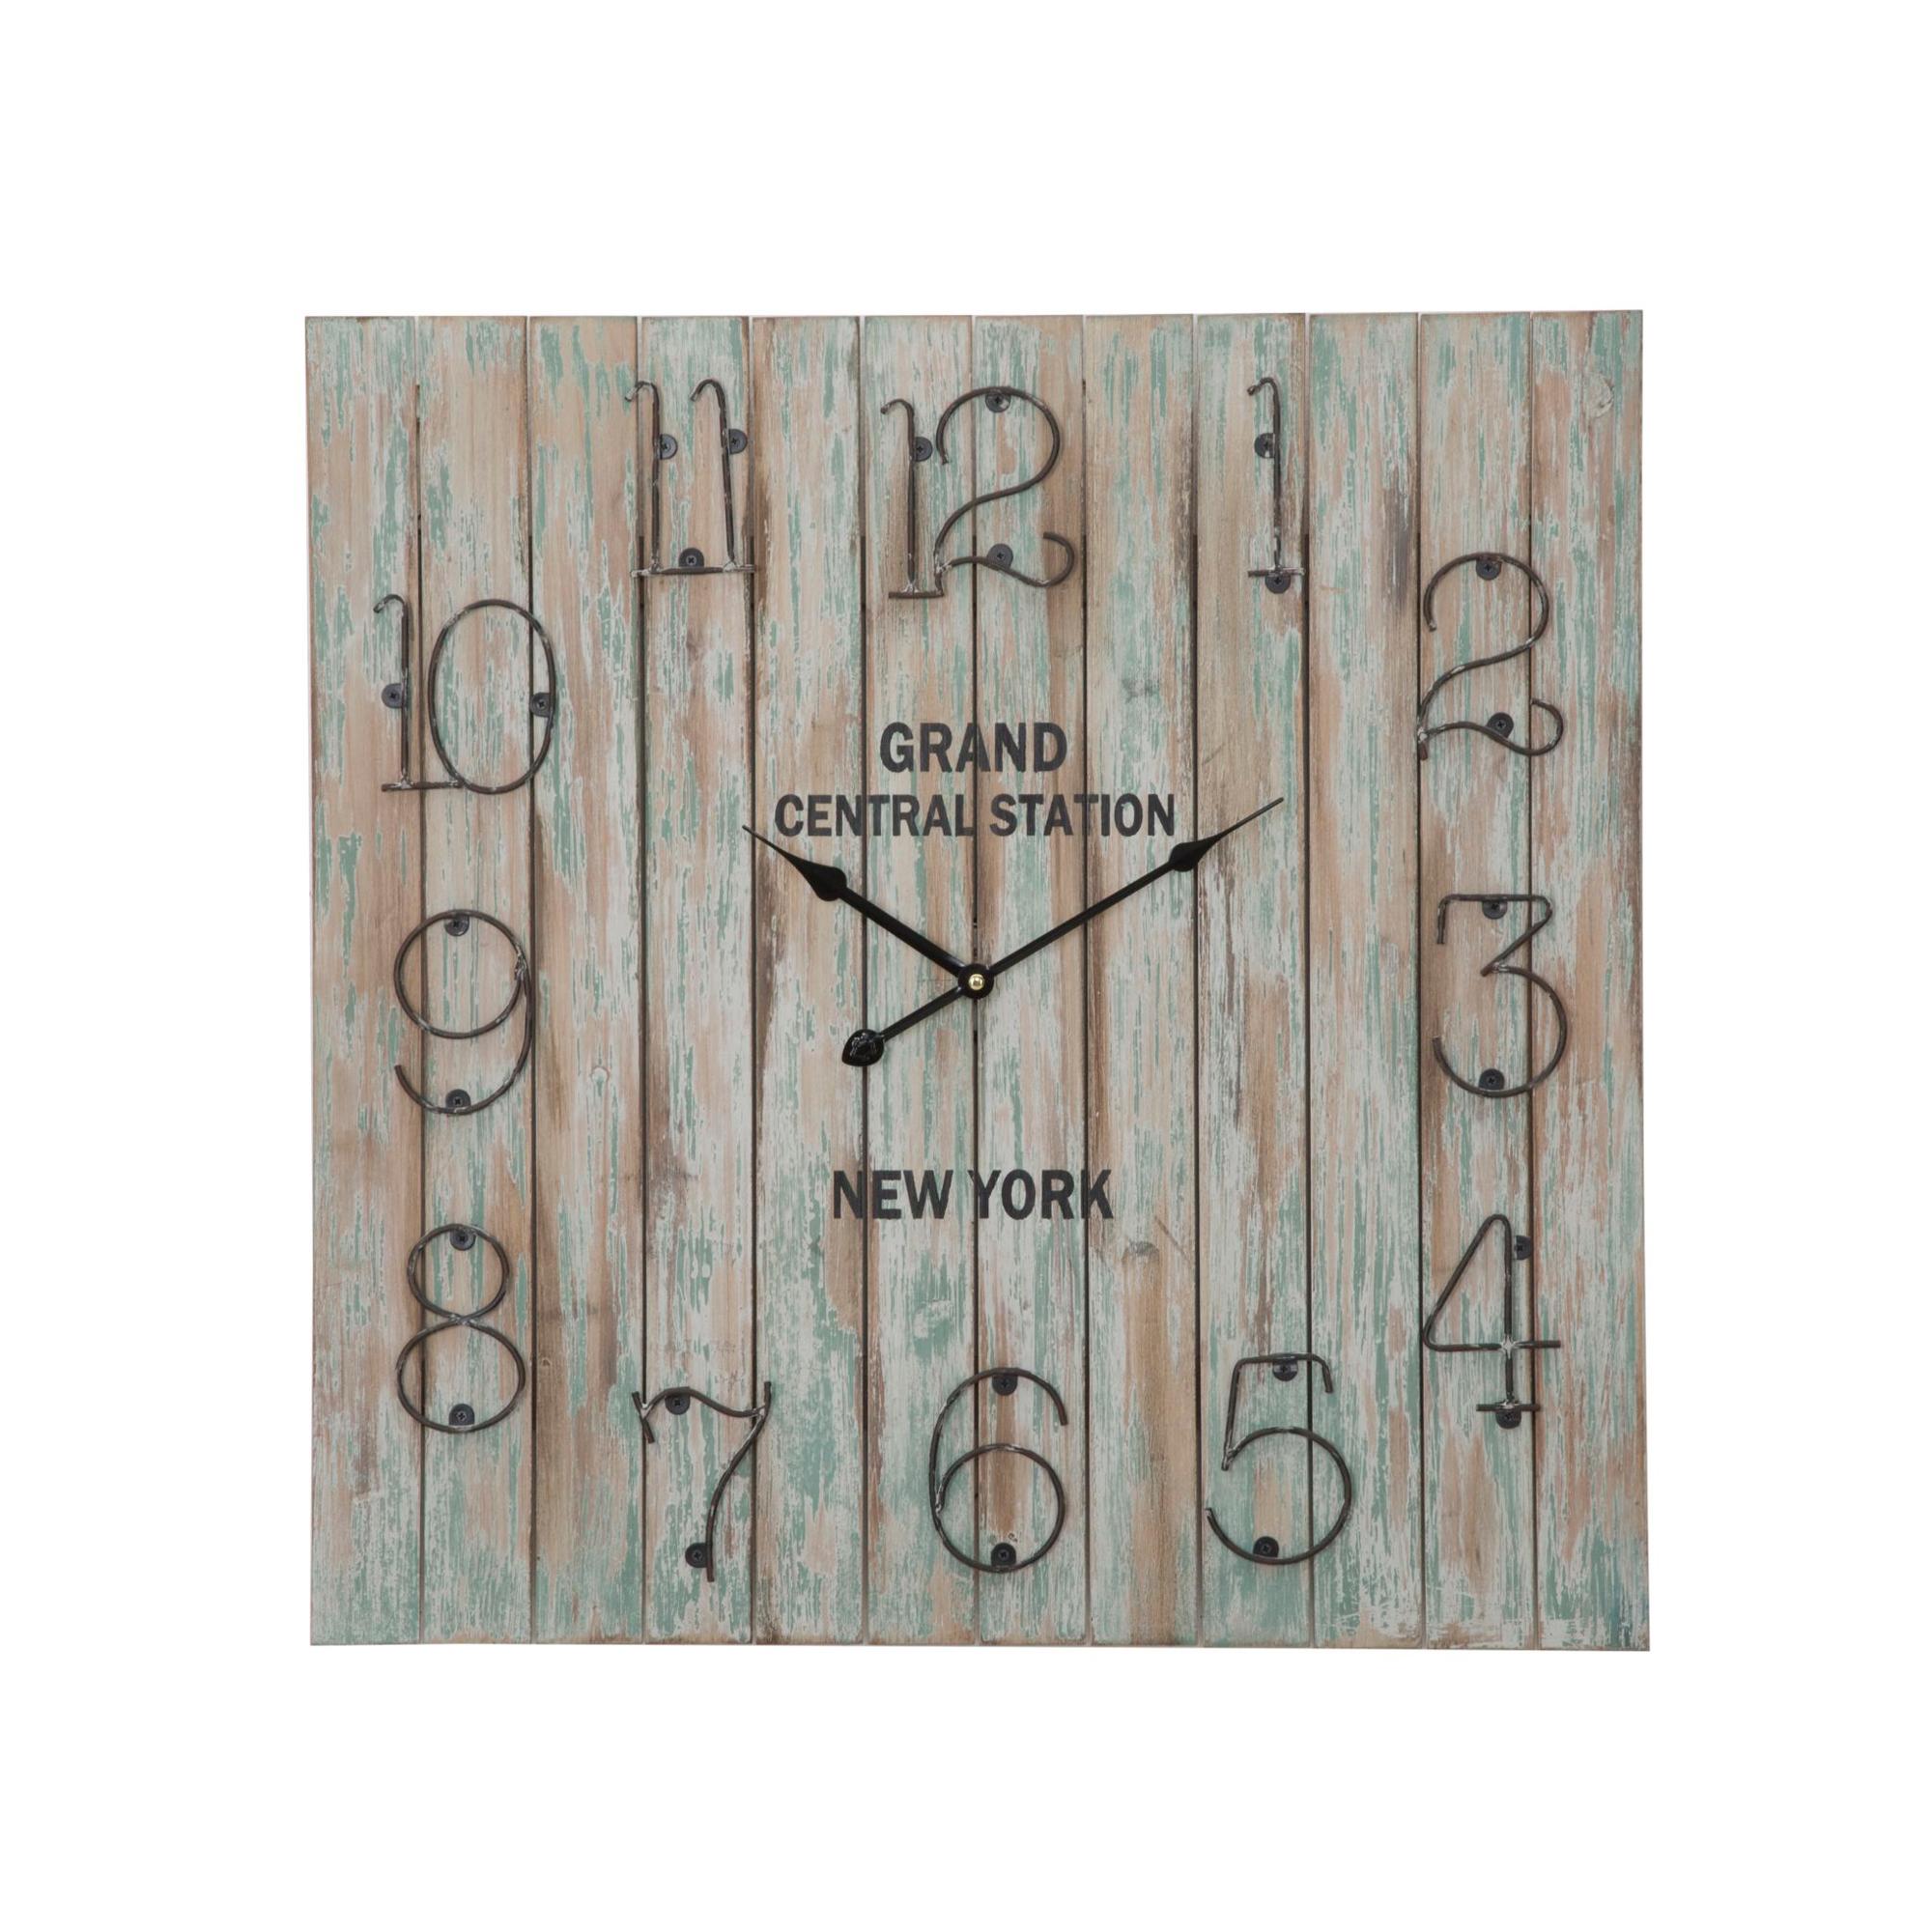 Antique wood clock decorative wall clock